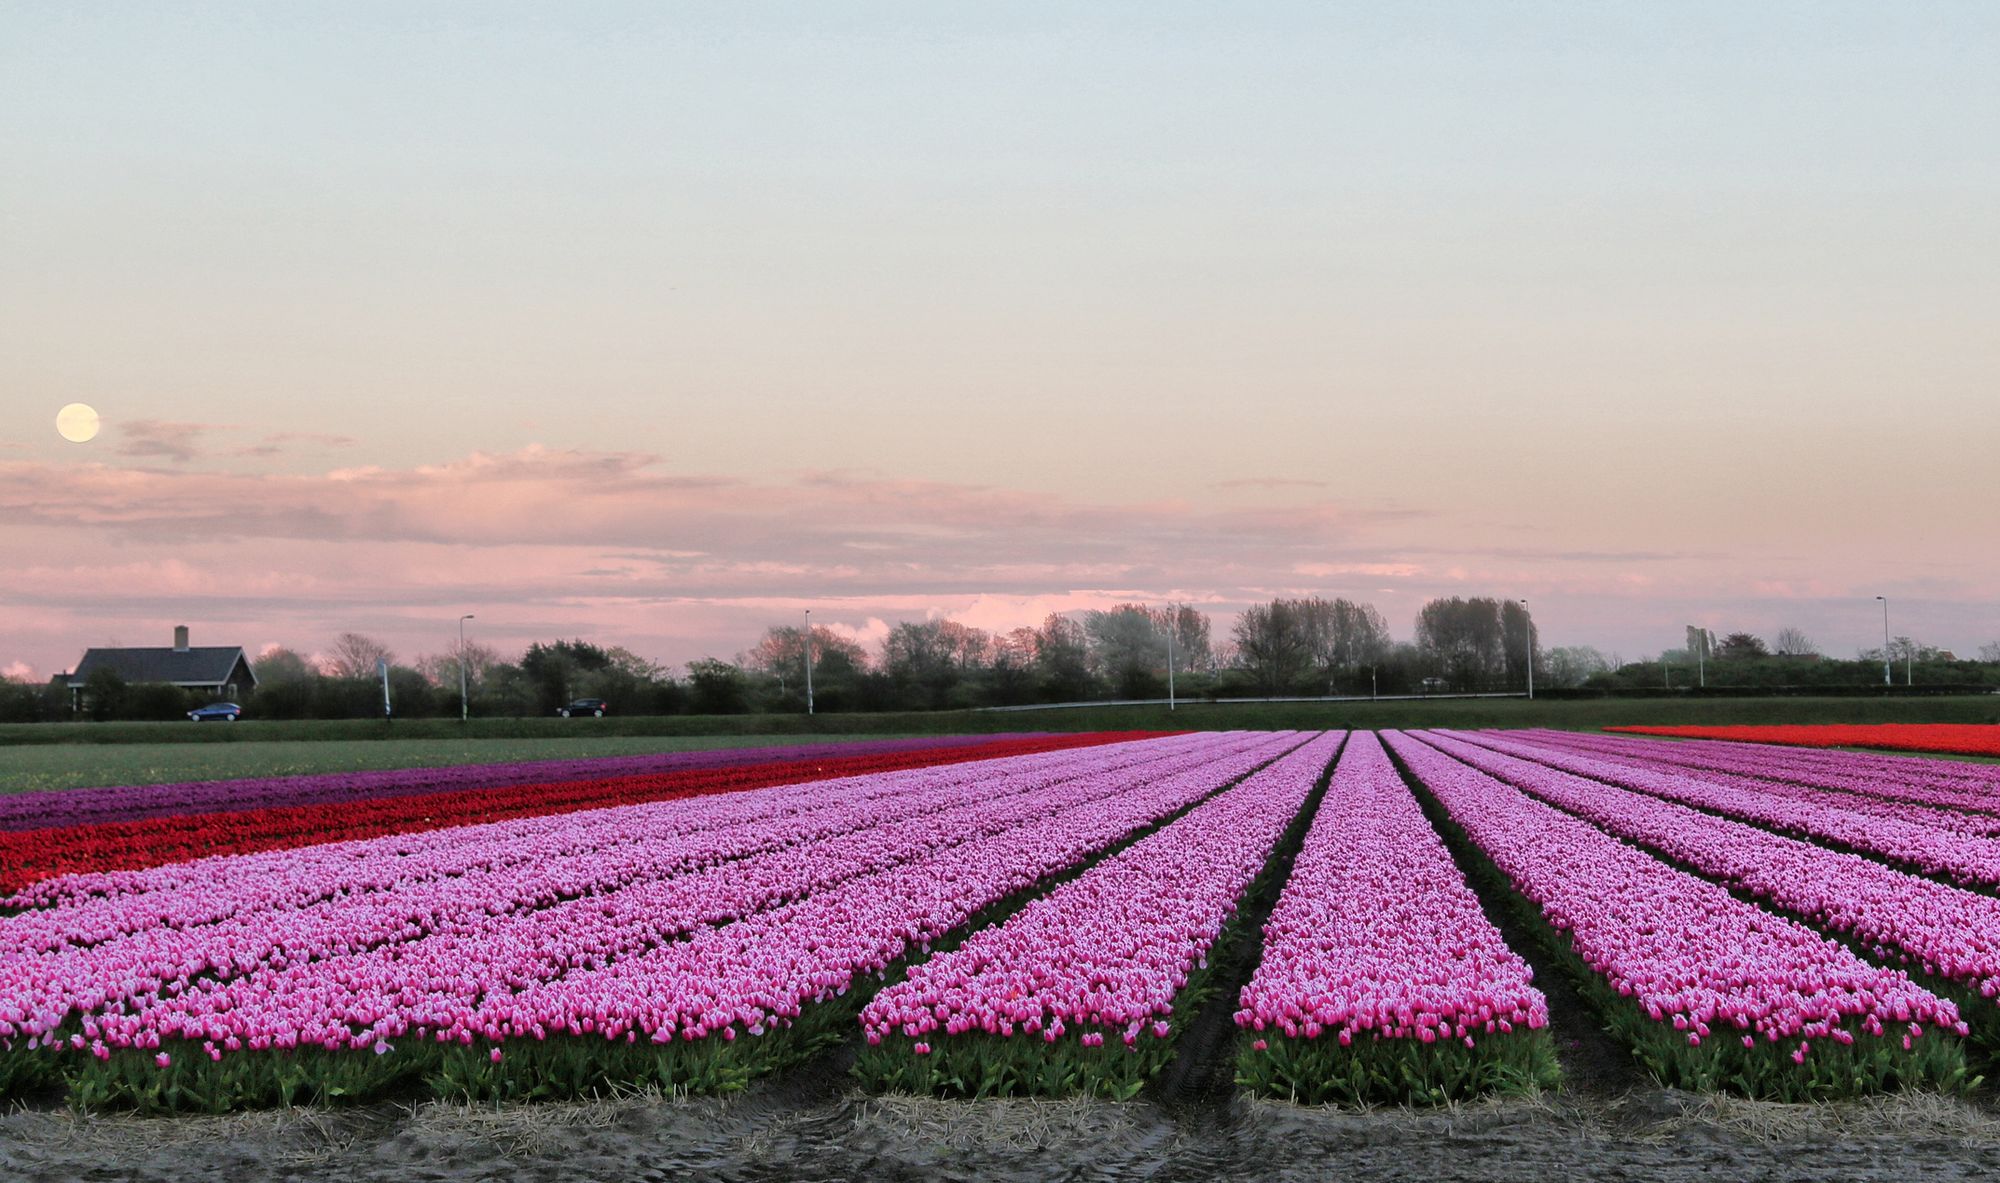 Голландия поля с тюльпанами